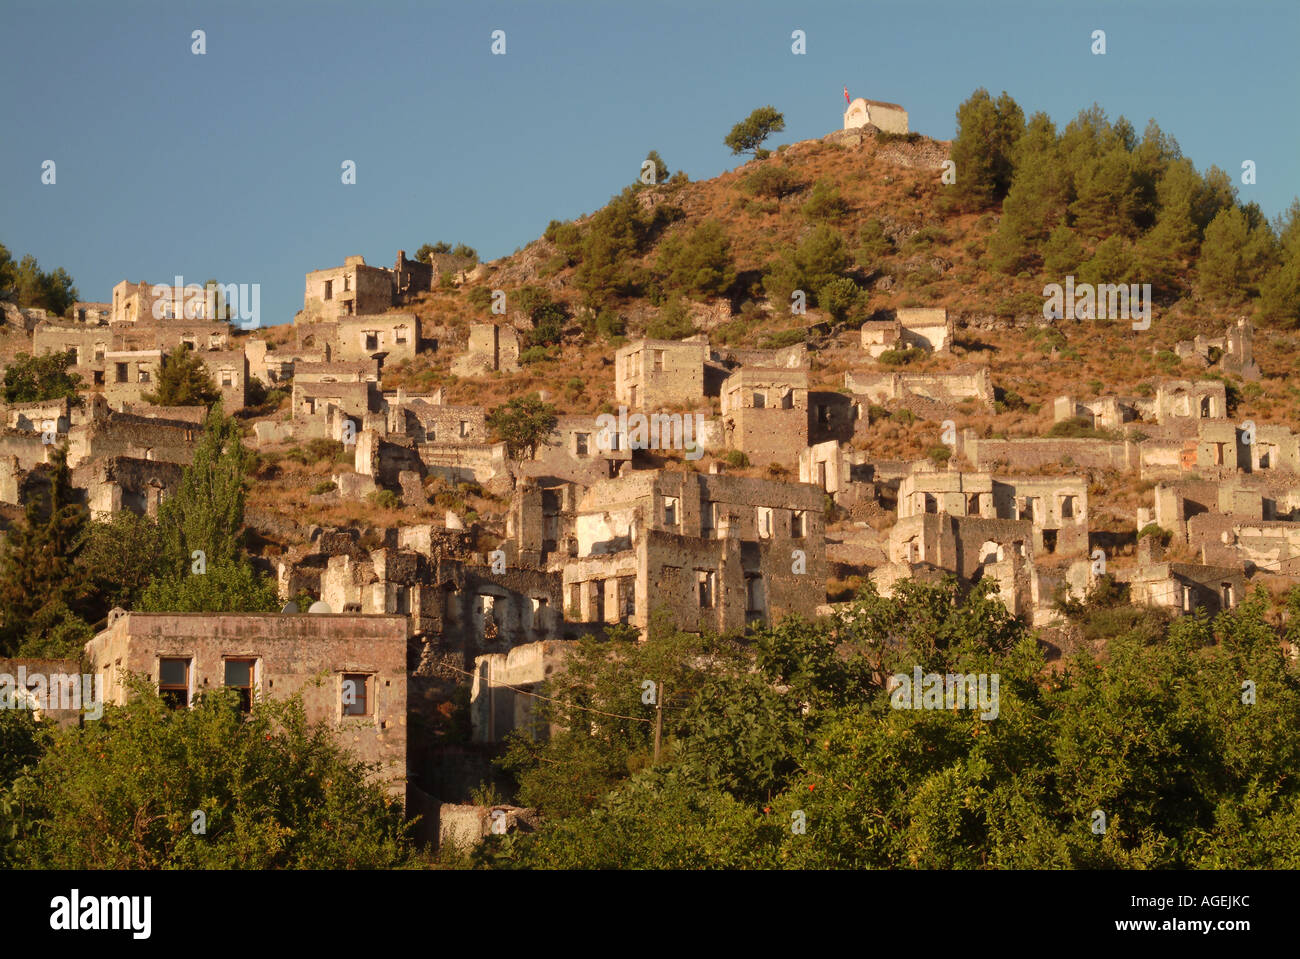 Deserted and Abandoned Greek Village of Kayakoy, Near Fethiye, Near Dalaman, Turquoise Coast, Turkey, Europe Stock Photo